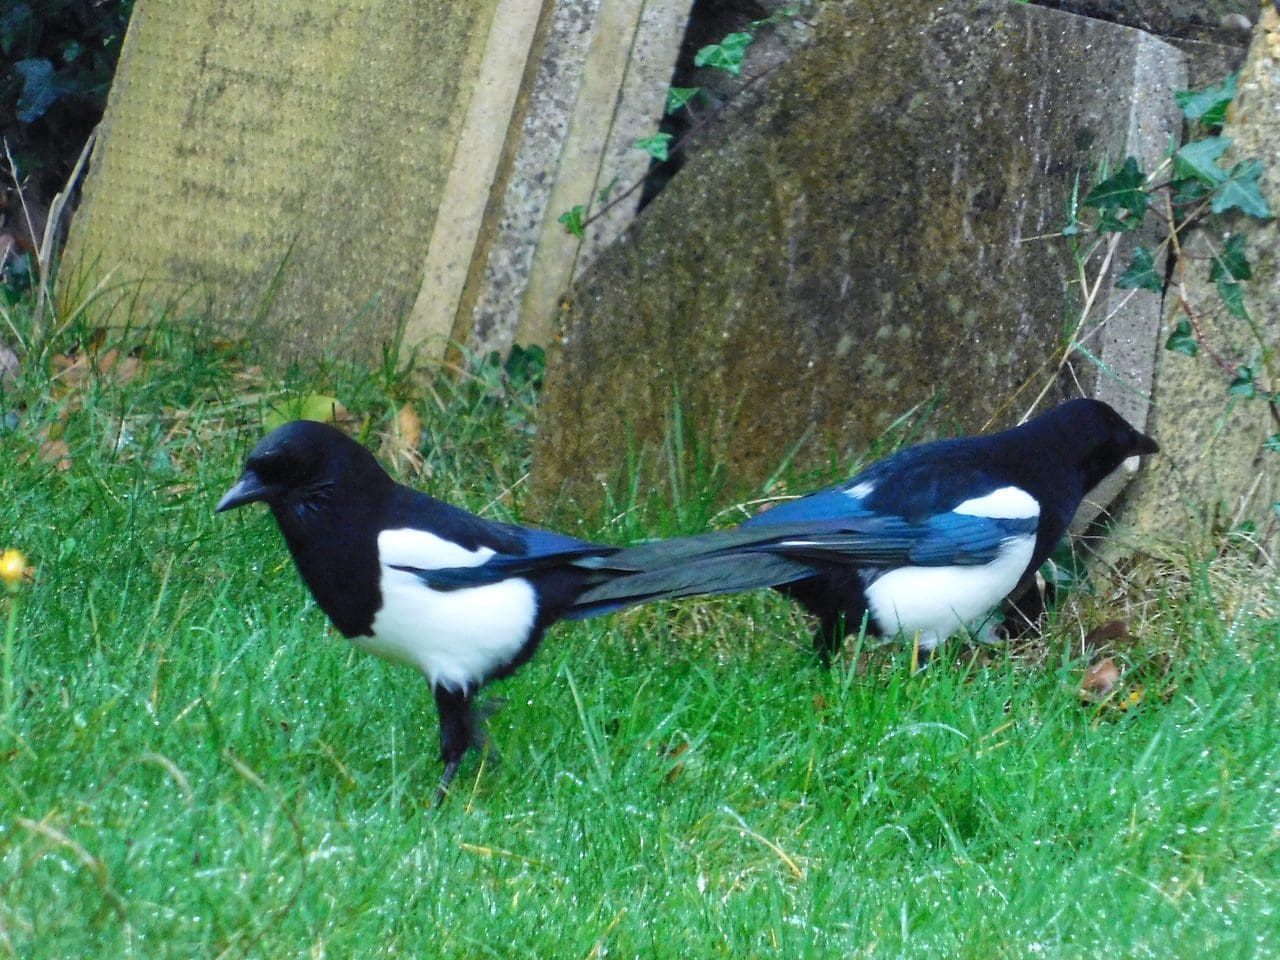 Magpies exploring the garden